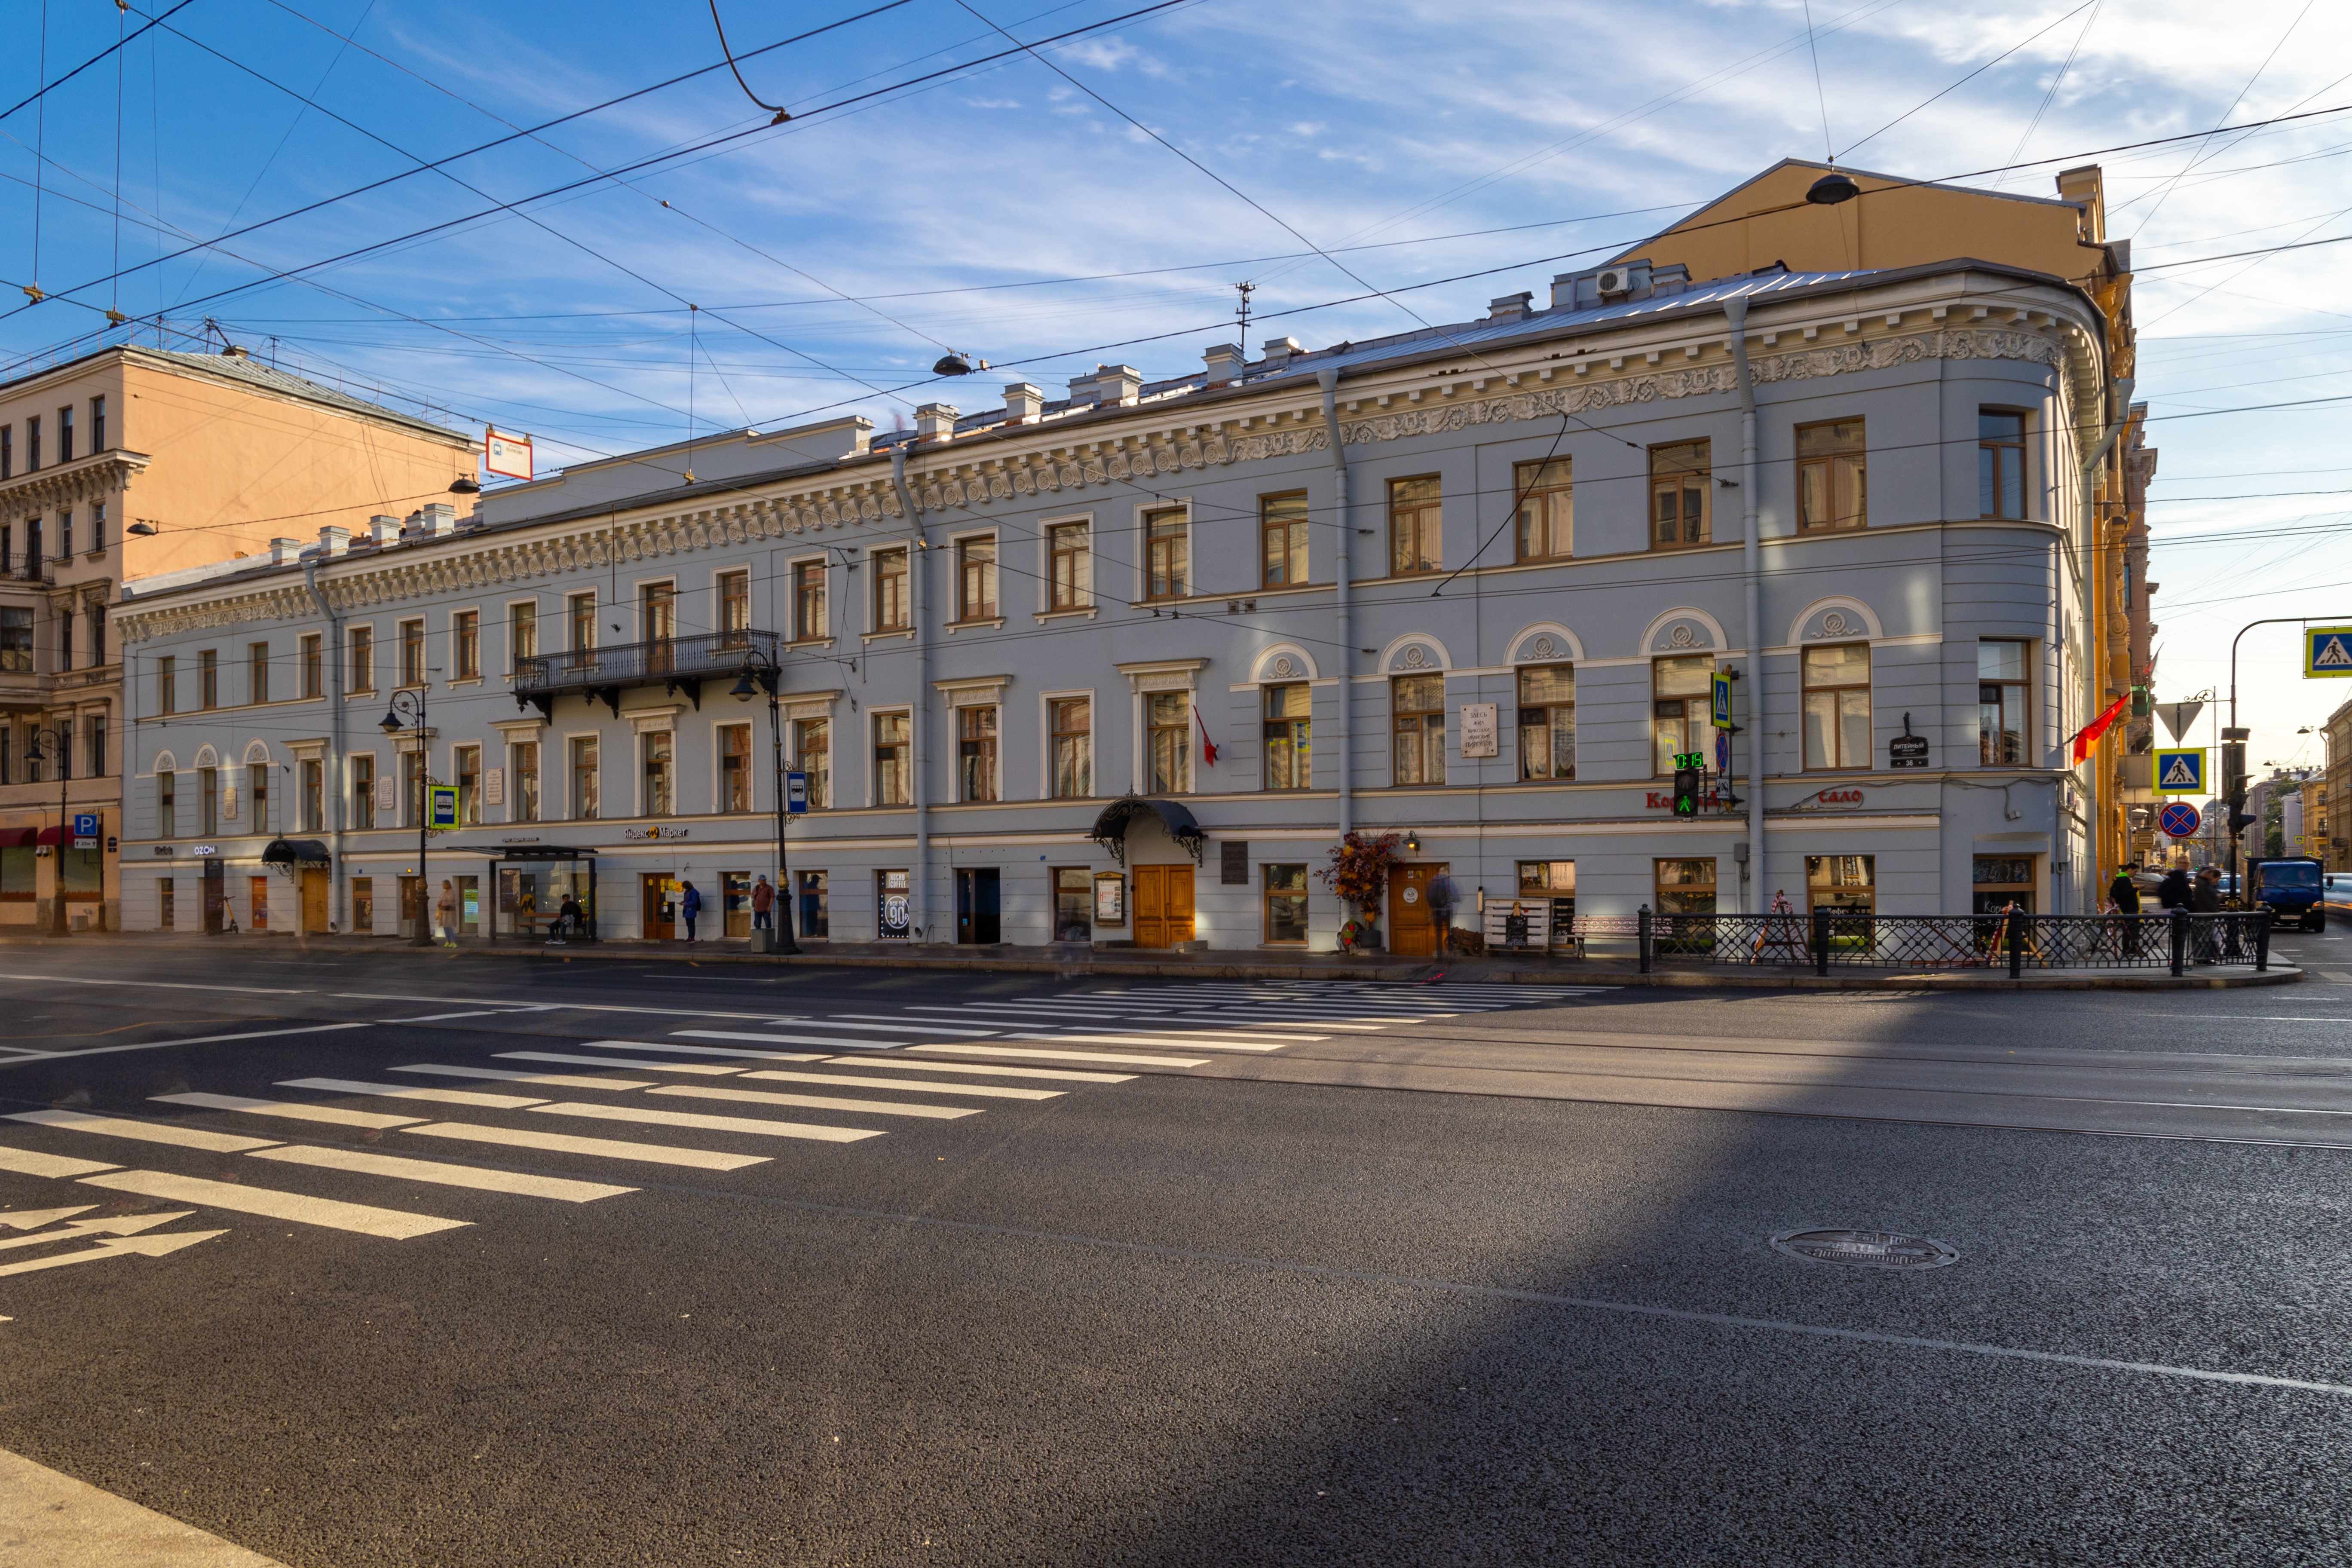 The Nekrasov Apartment Museum